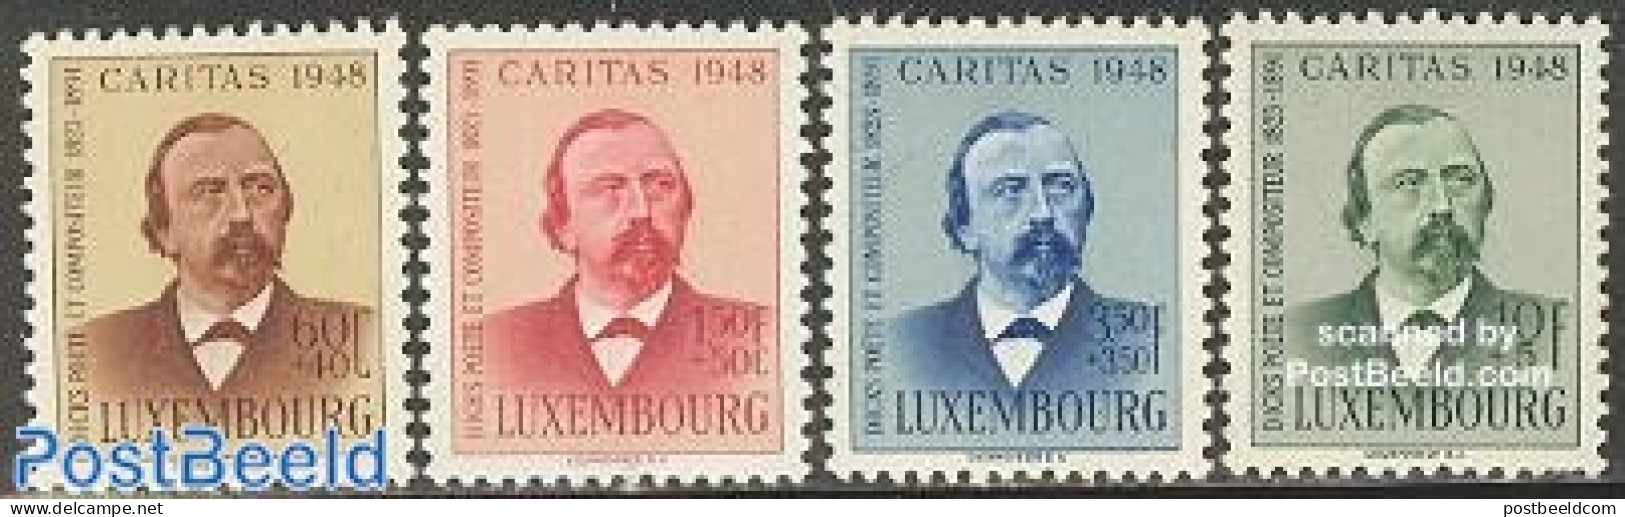 Luxemburg 1948 Caritas, Dicks 4v, Mint NH, Performance Art - Music - Art - Authors - Unused Stamps